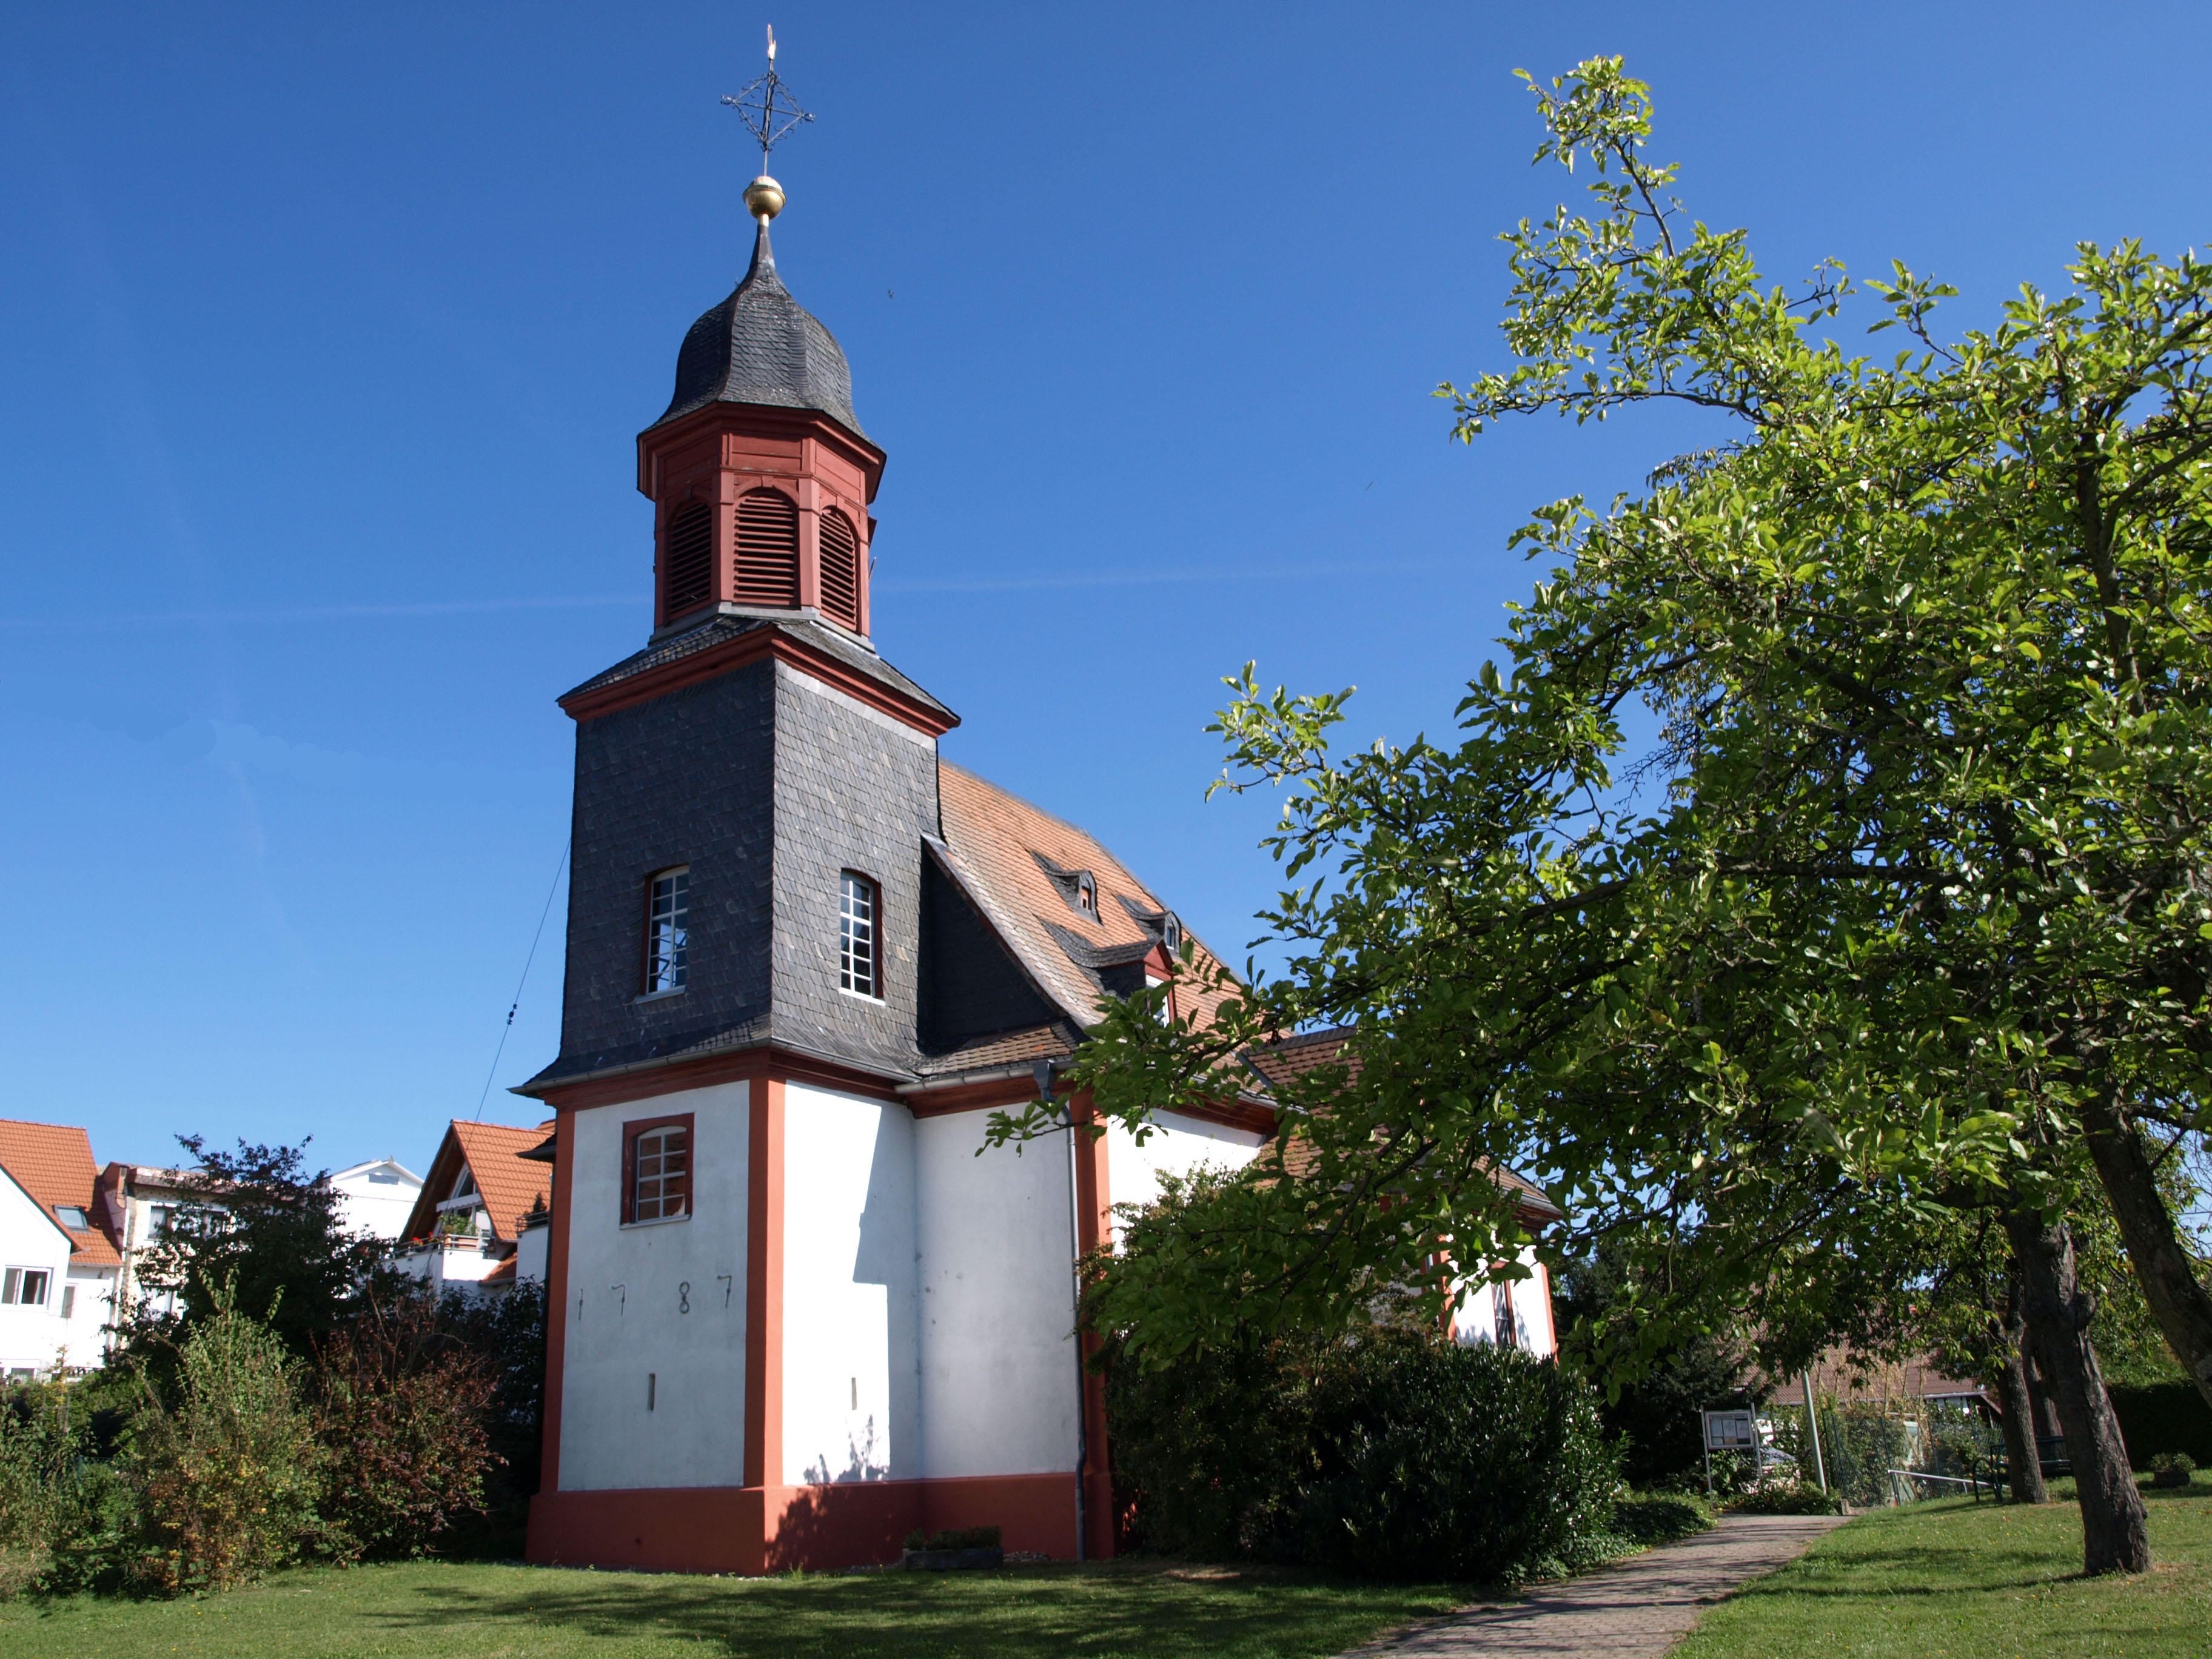 Bild 1 Evangelische Kirche Auringen - Evangelische Kirchengemeinde Auringen in Wiesbaden